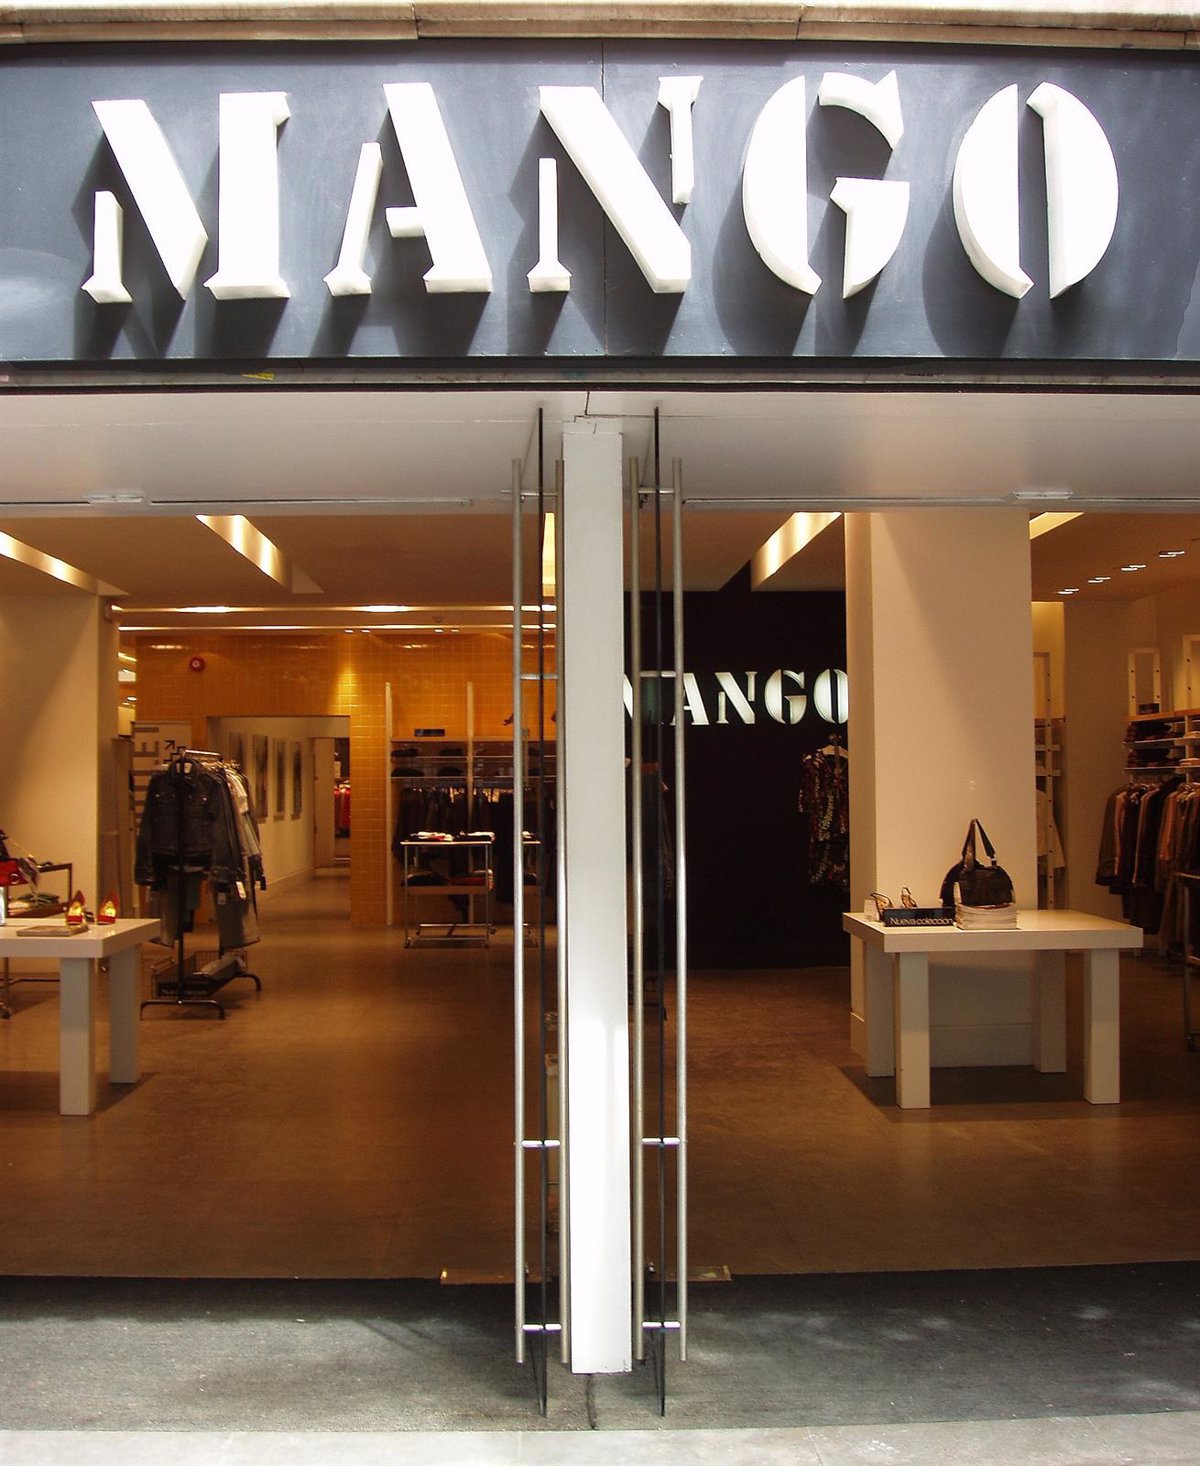 Economía/Empresas.- Mango ofrece cambiar ropa usada prendas nuevas un 20% de descuento